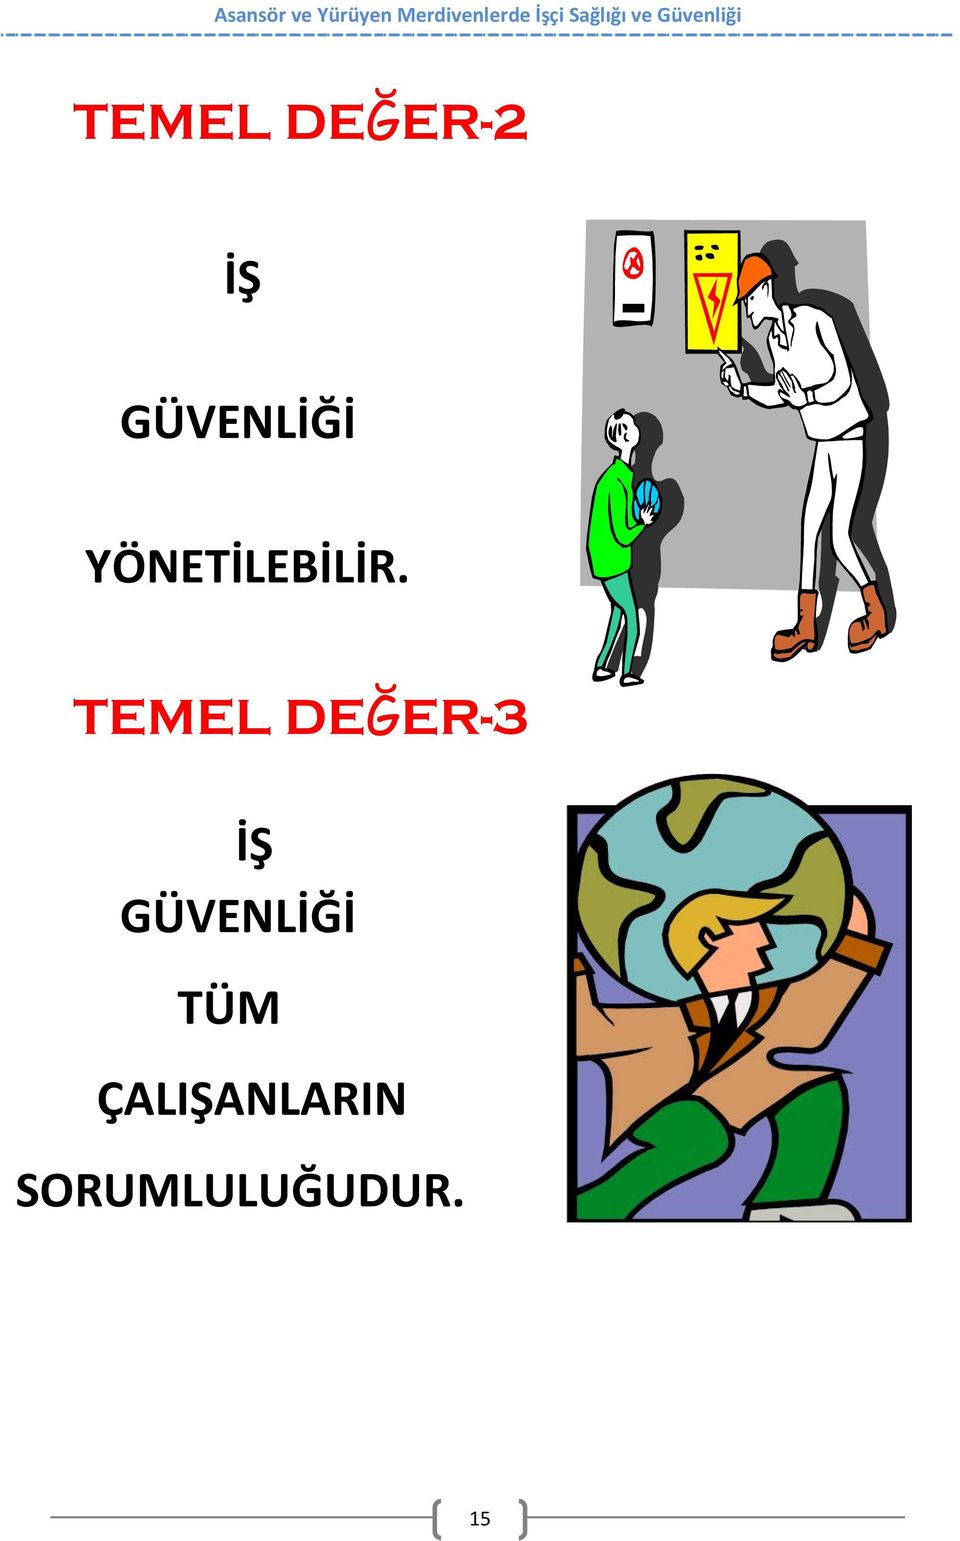 TEMEL DEĞER-3 İŞ